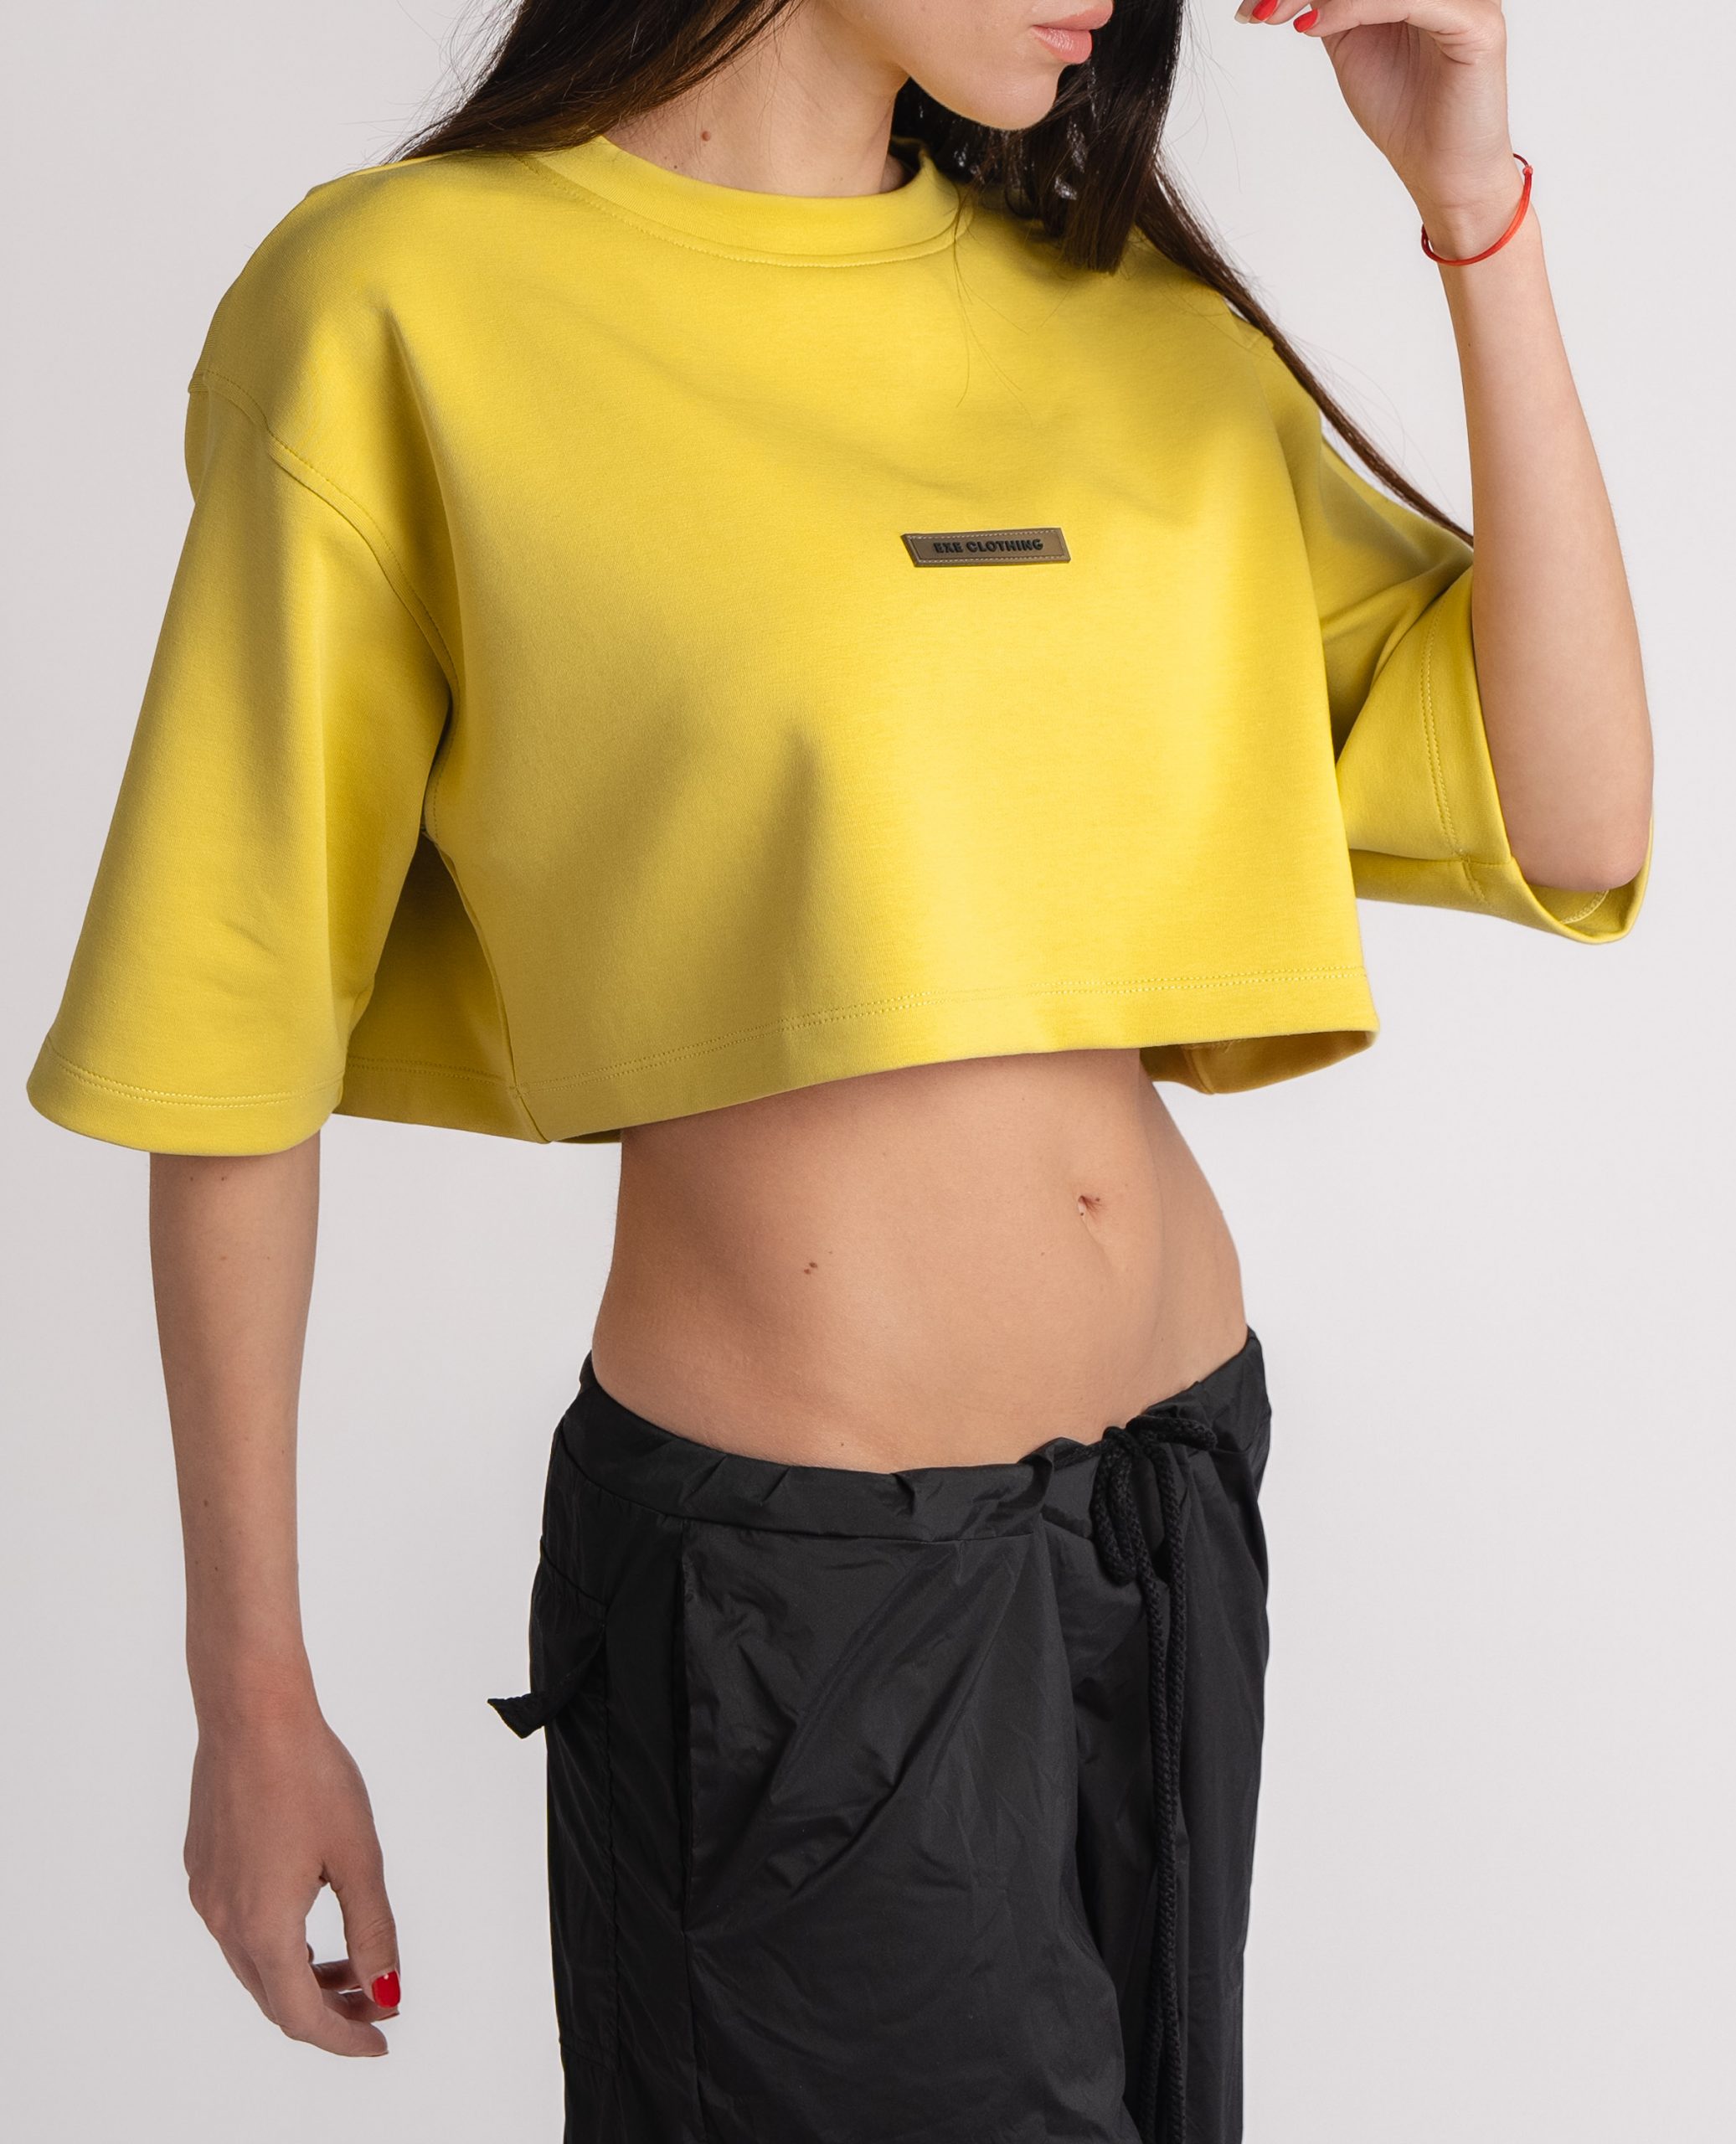 EXE CLOTHING дамска жълта тениска